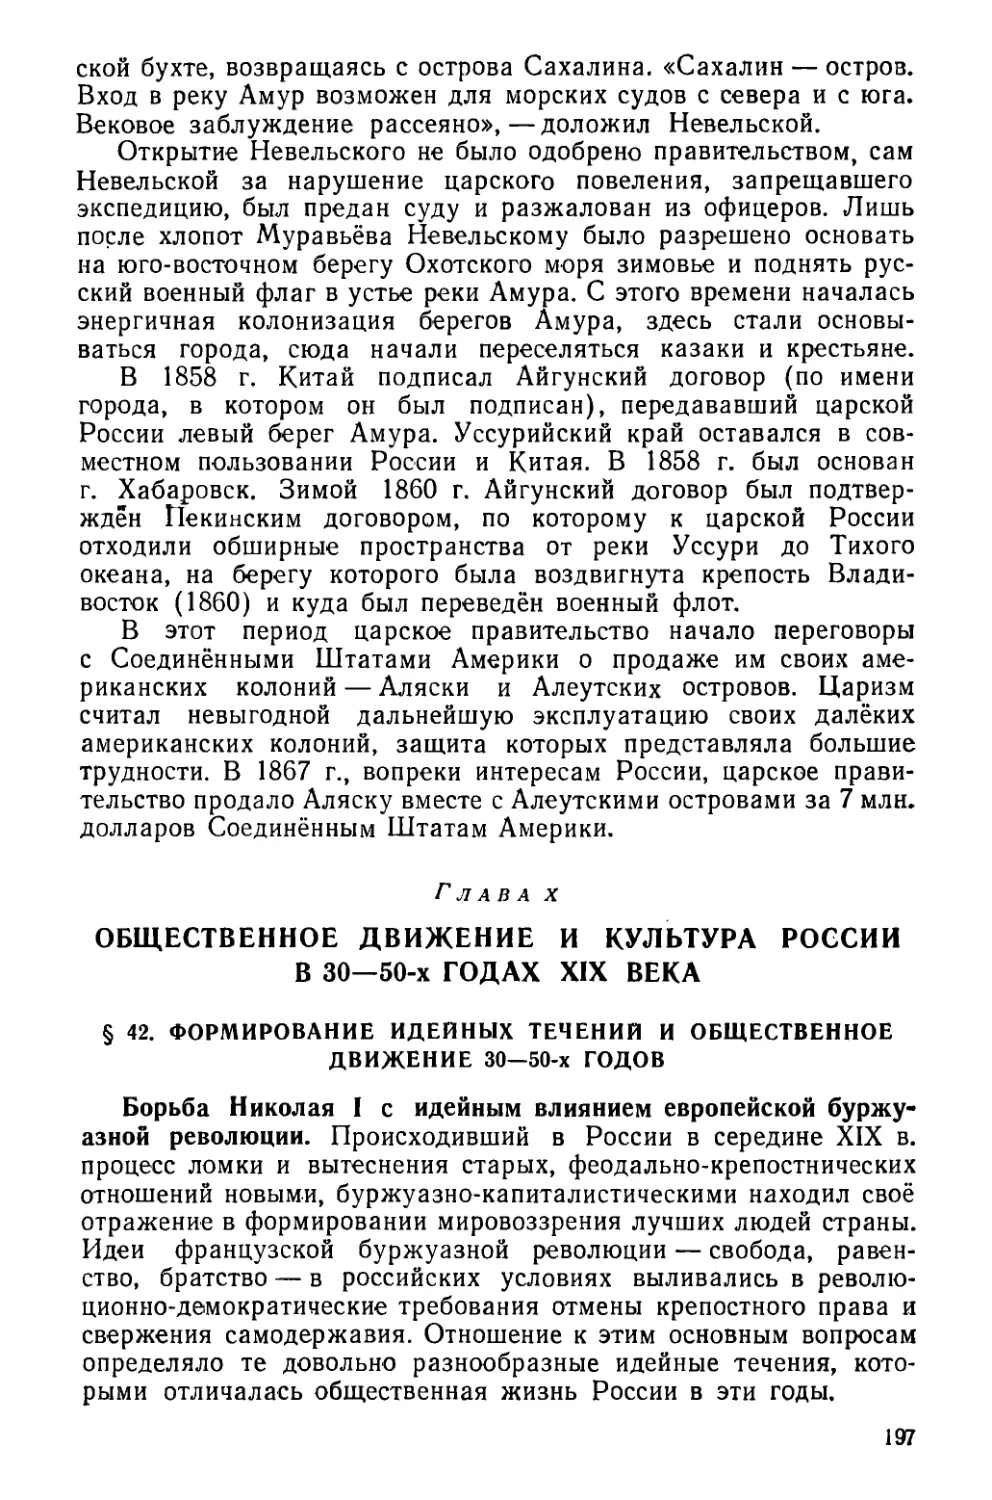 Глава X. Общественное движение и культура России в 30—50-х годах XIX века